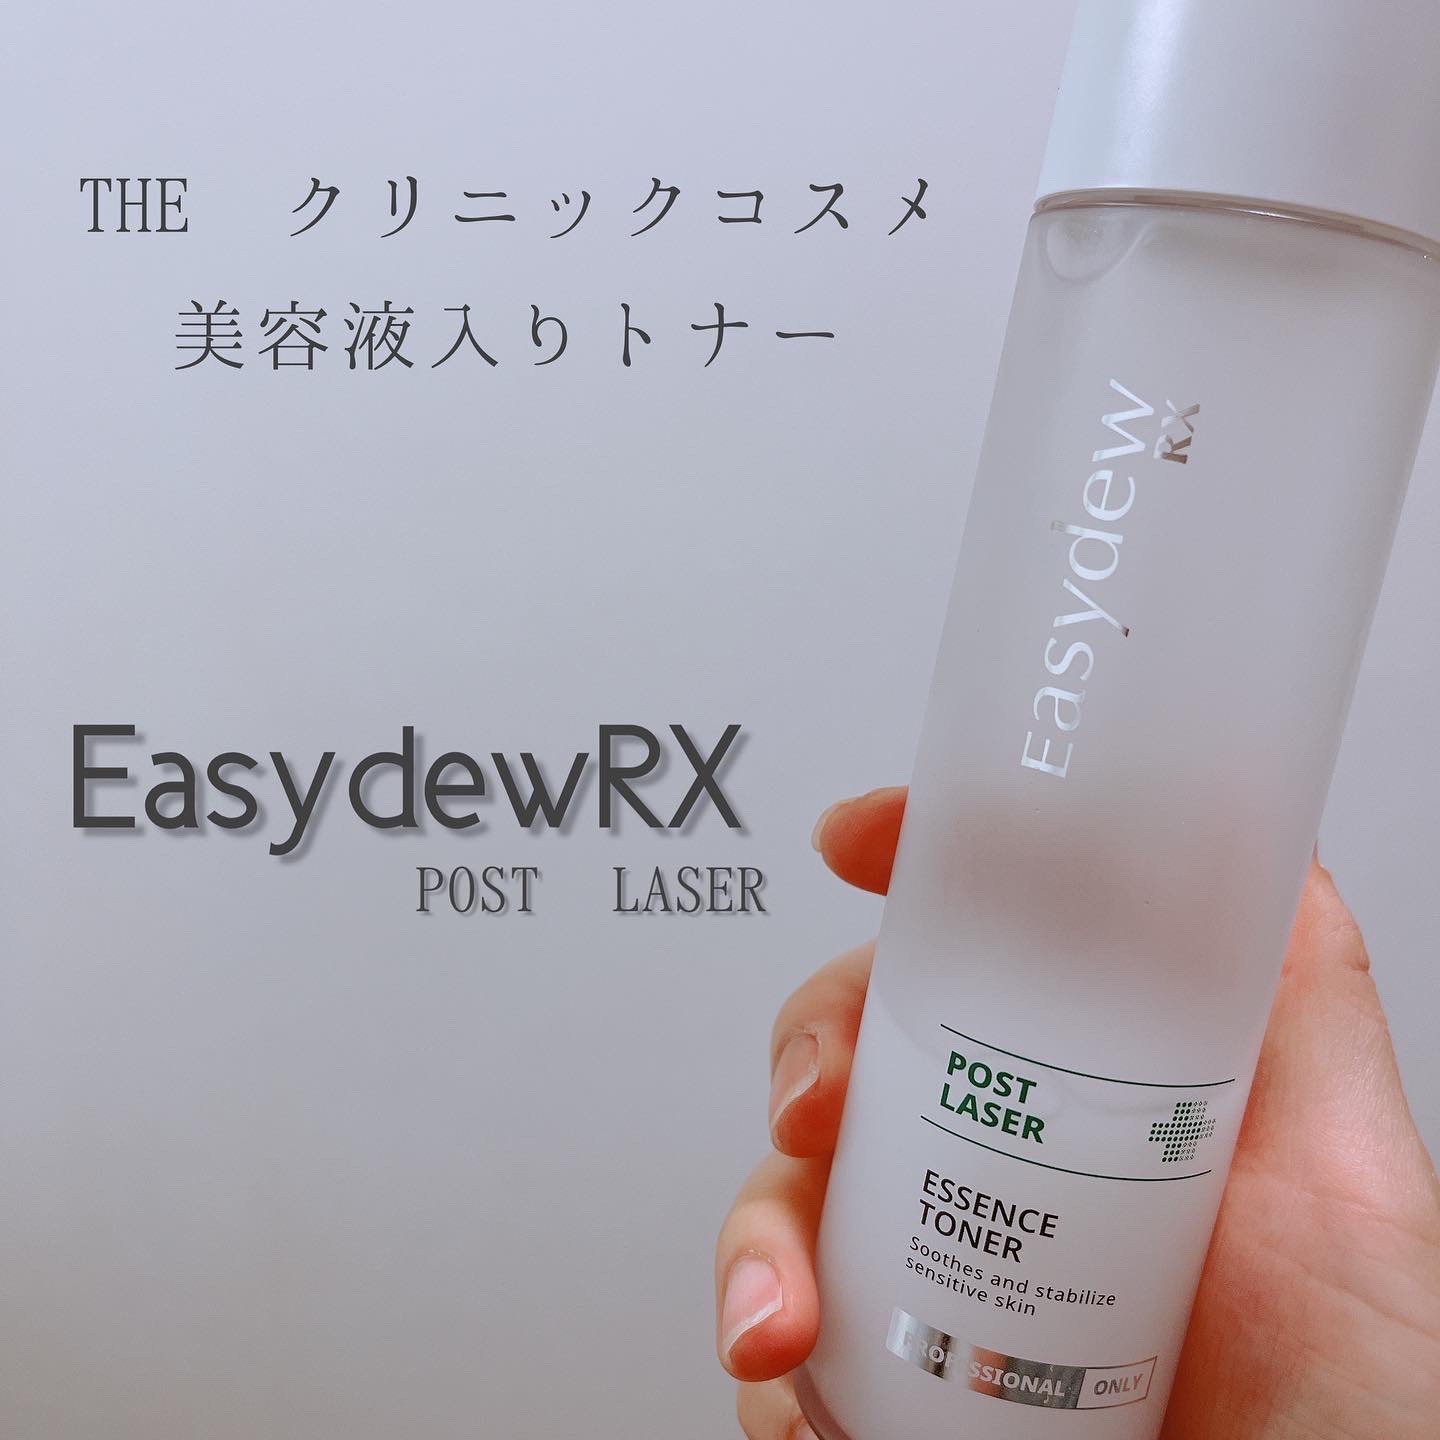 化粧水/ローションイージーデュー RX Easydew RX ポストレーザー エッセンストナー